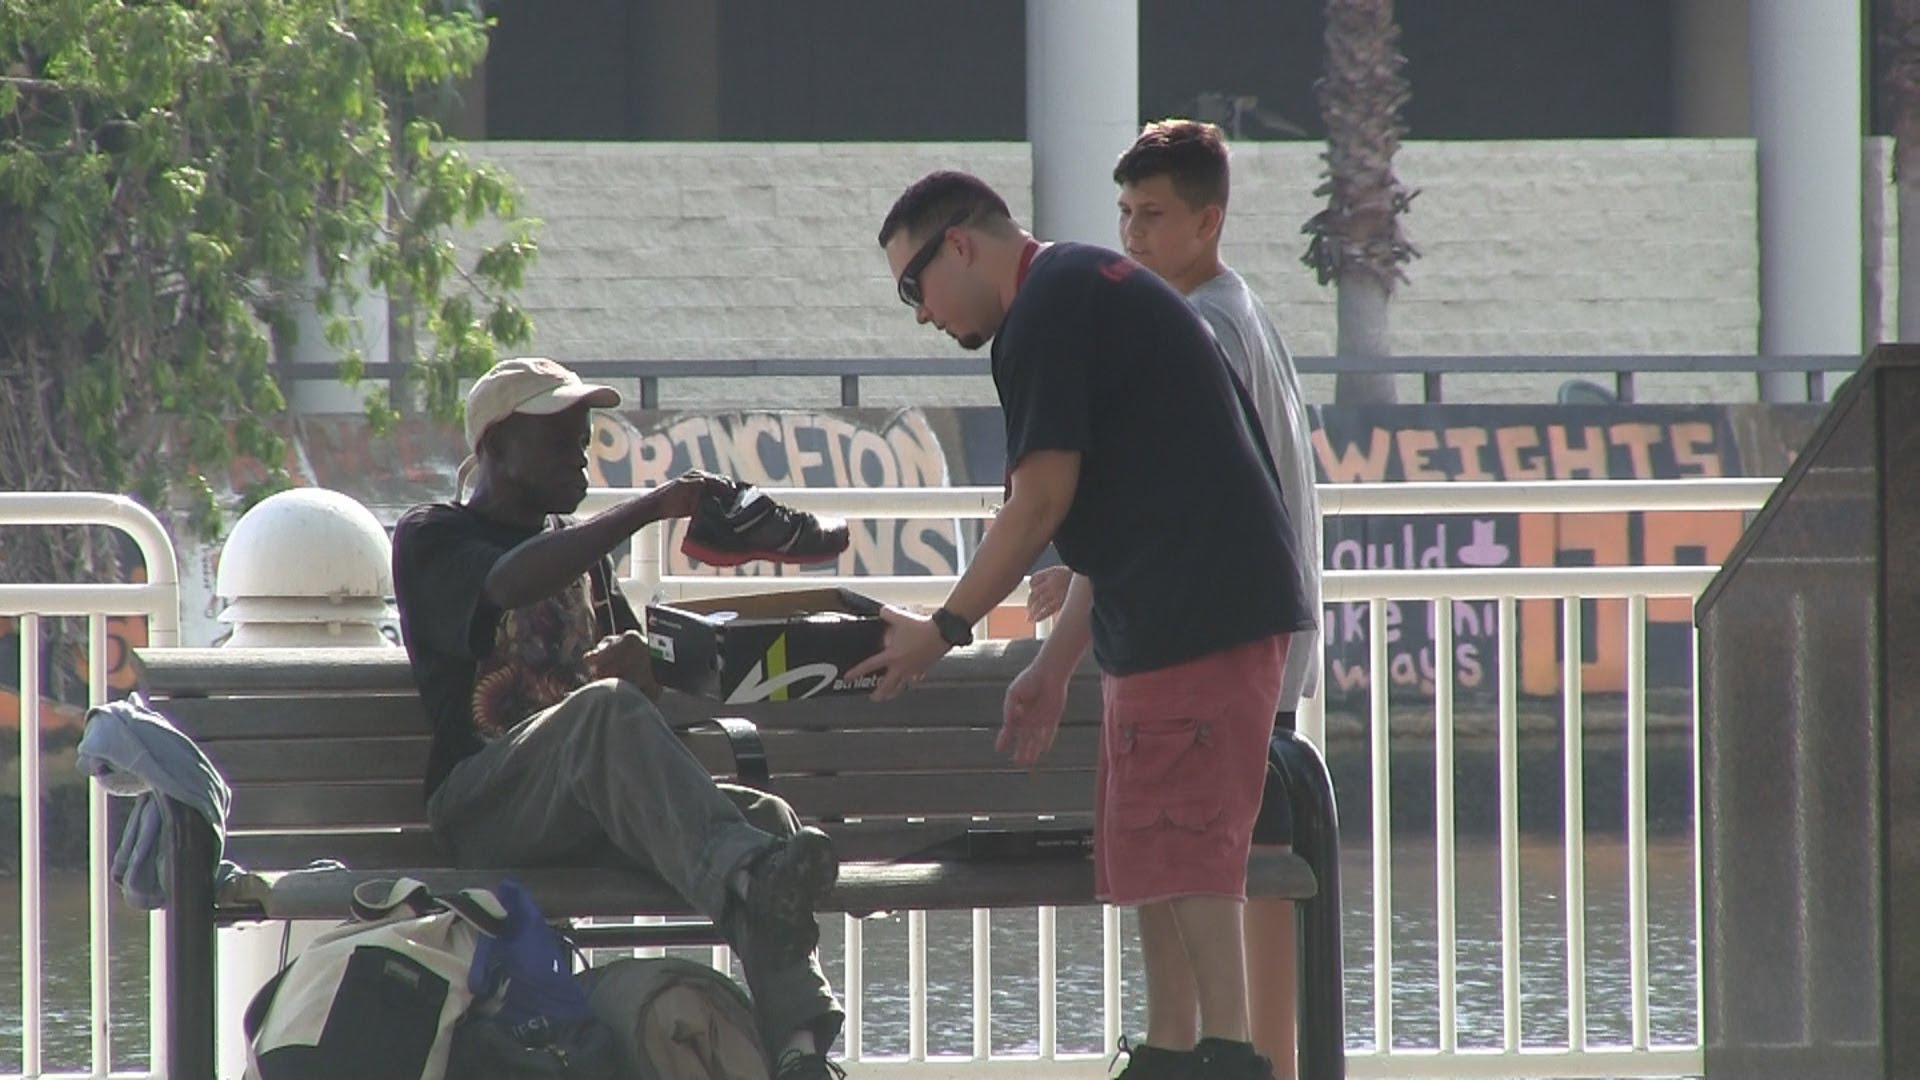 VIDEO – Arī bezpajumtnieki ir cilvēki. (Helping The Homeless)